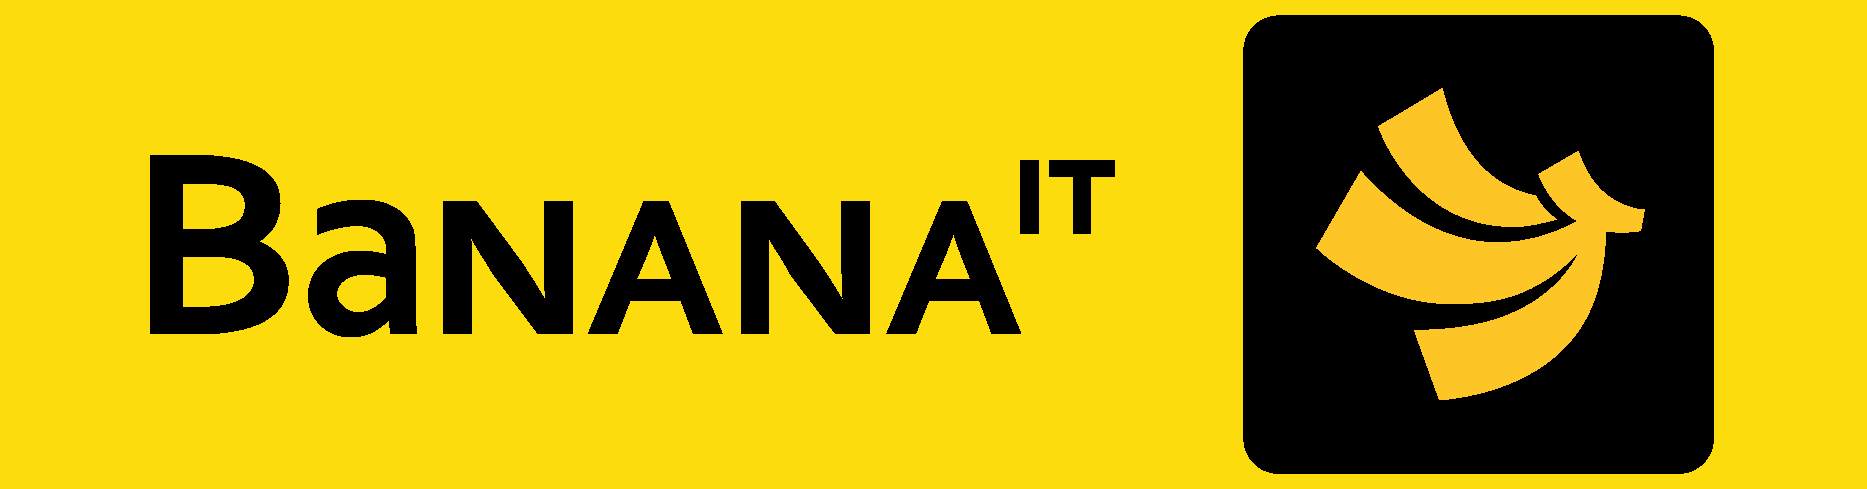 Banana IT new Logo Vector